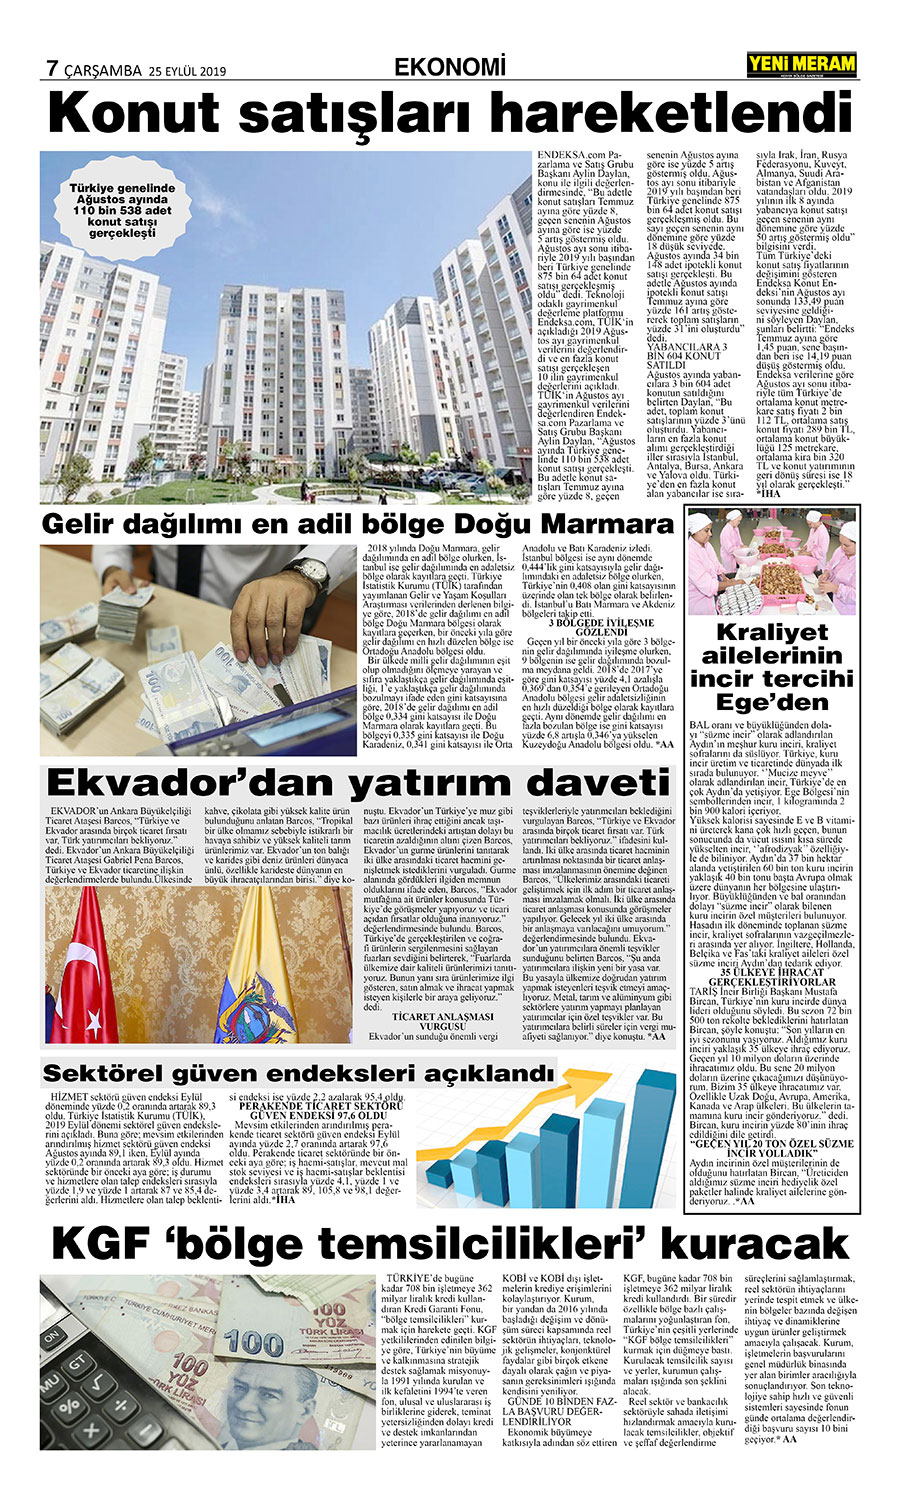 25 Eylül 2019 Yeni Meram Gazetesi